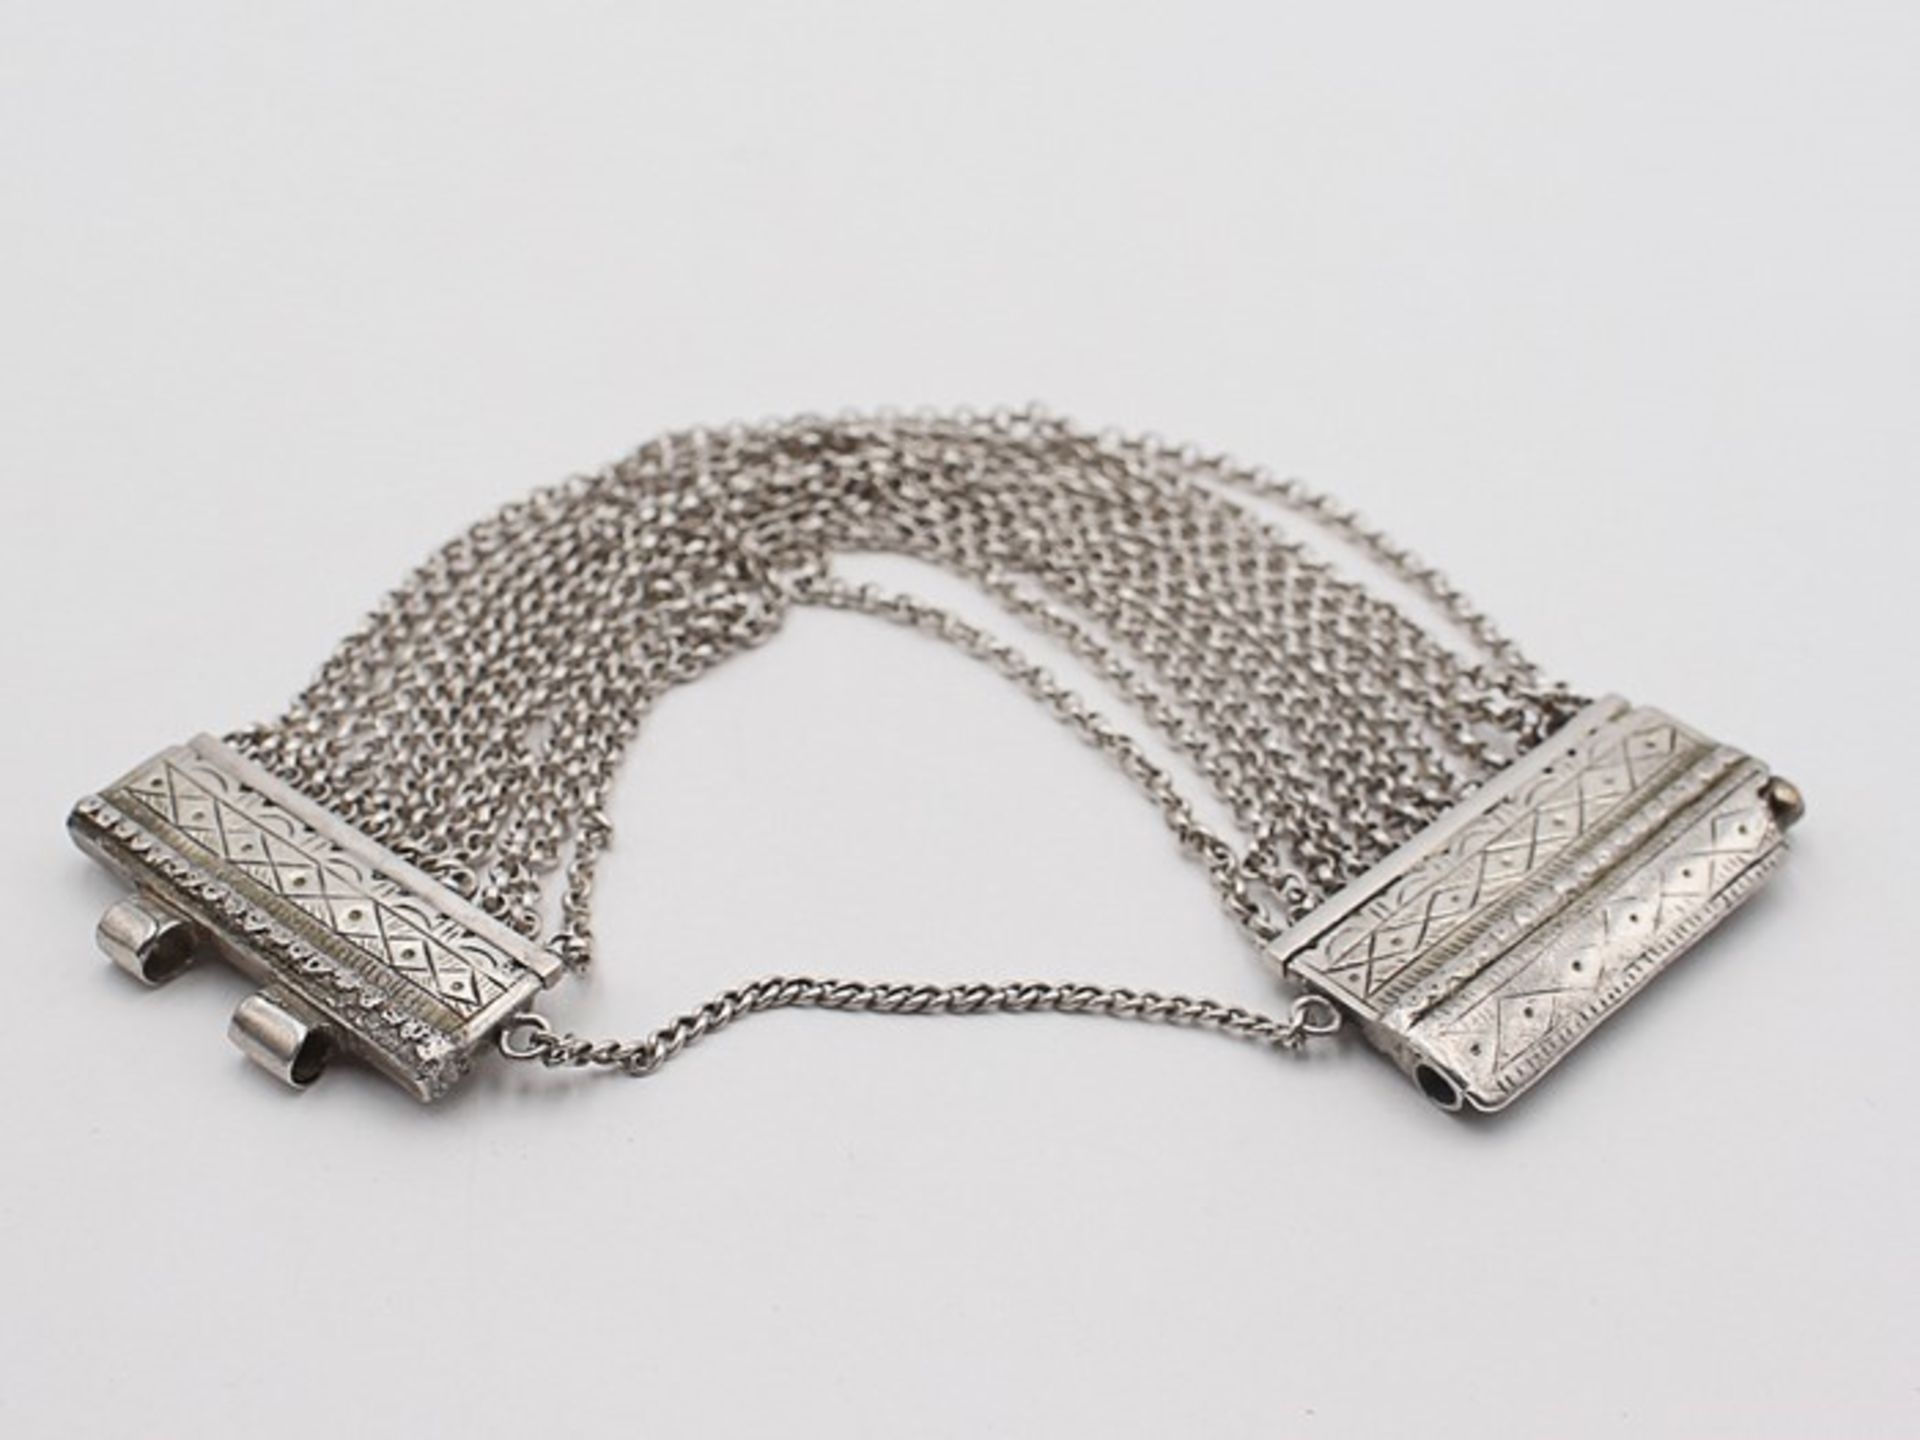 Trachtenschmuck - ArmbandSi, Zierschließe mit eingraviertem Rautendekor, an mehrsträngiger Erbskette